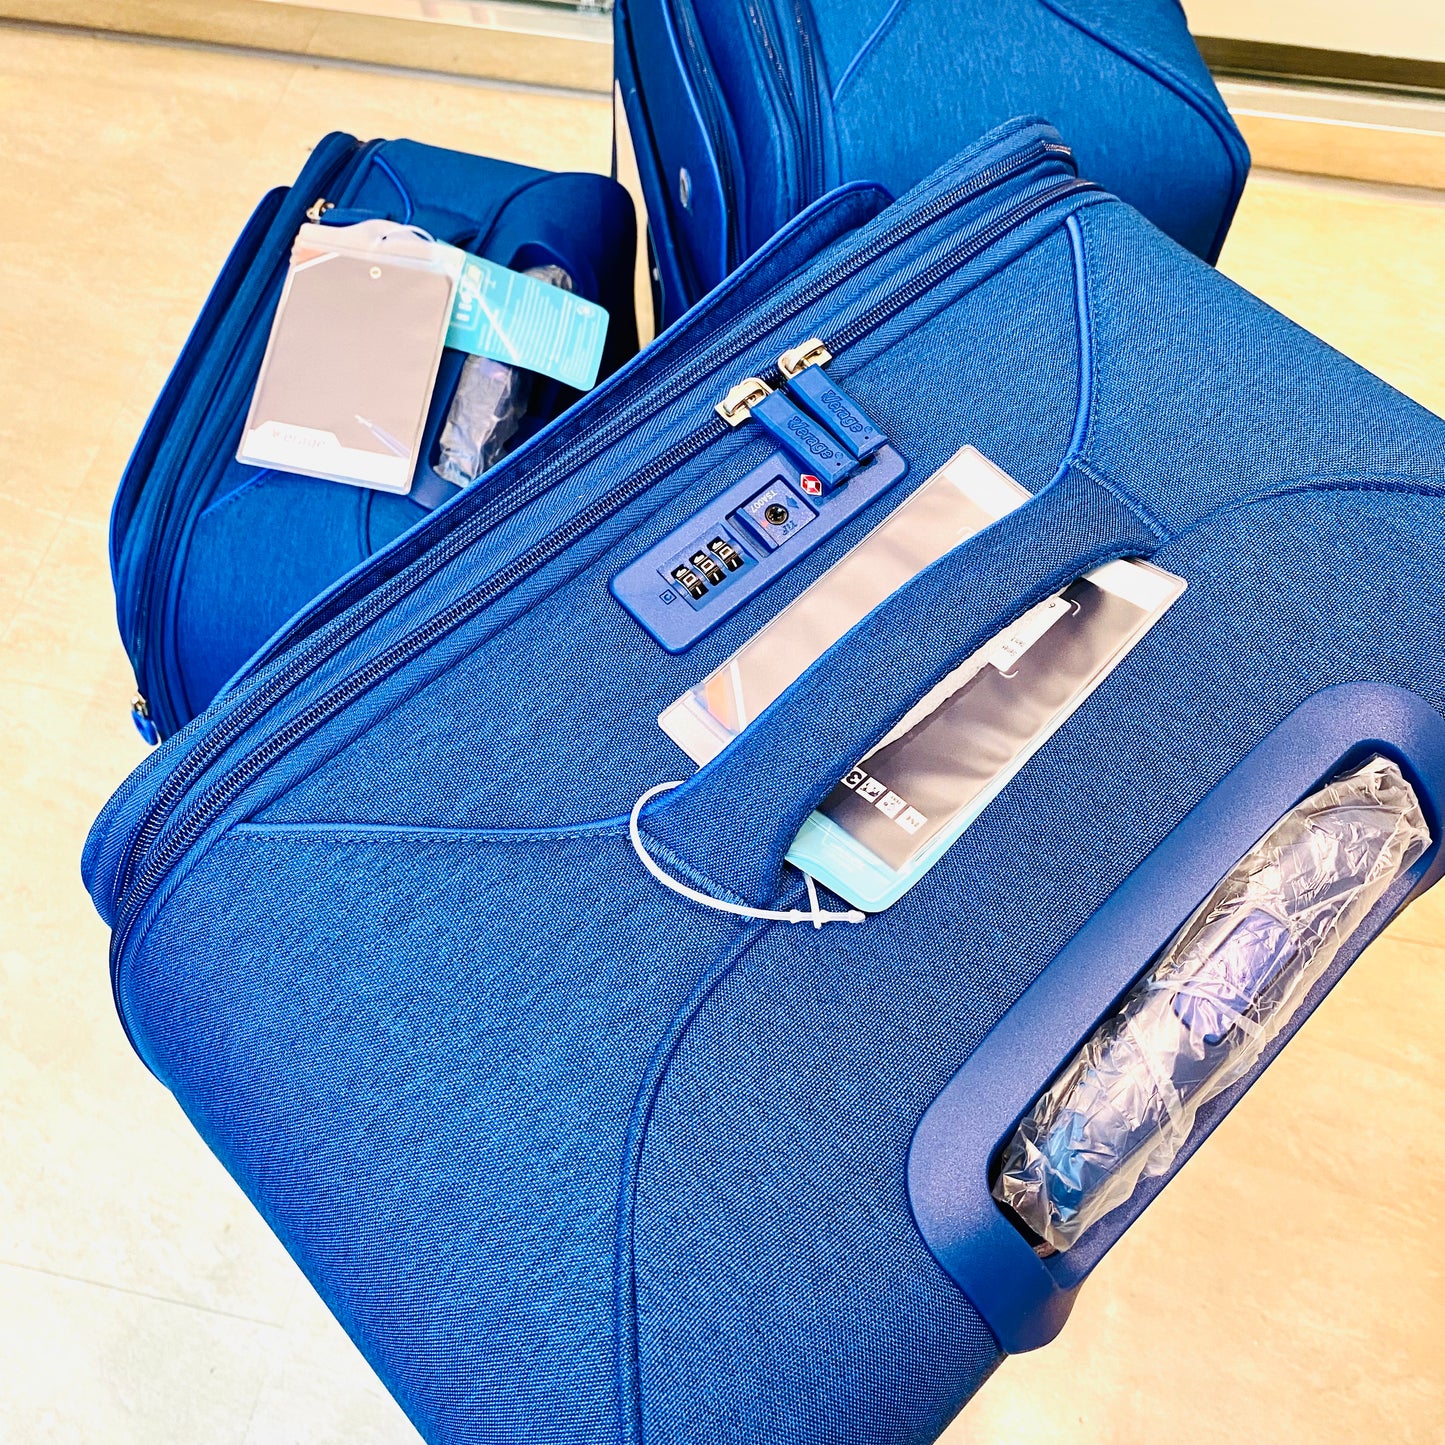 免費送貨一套3件VERAGE 17006 20/24/28寸藍色手提可伸縮拉捍行李箱